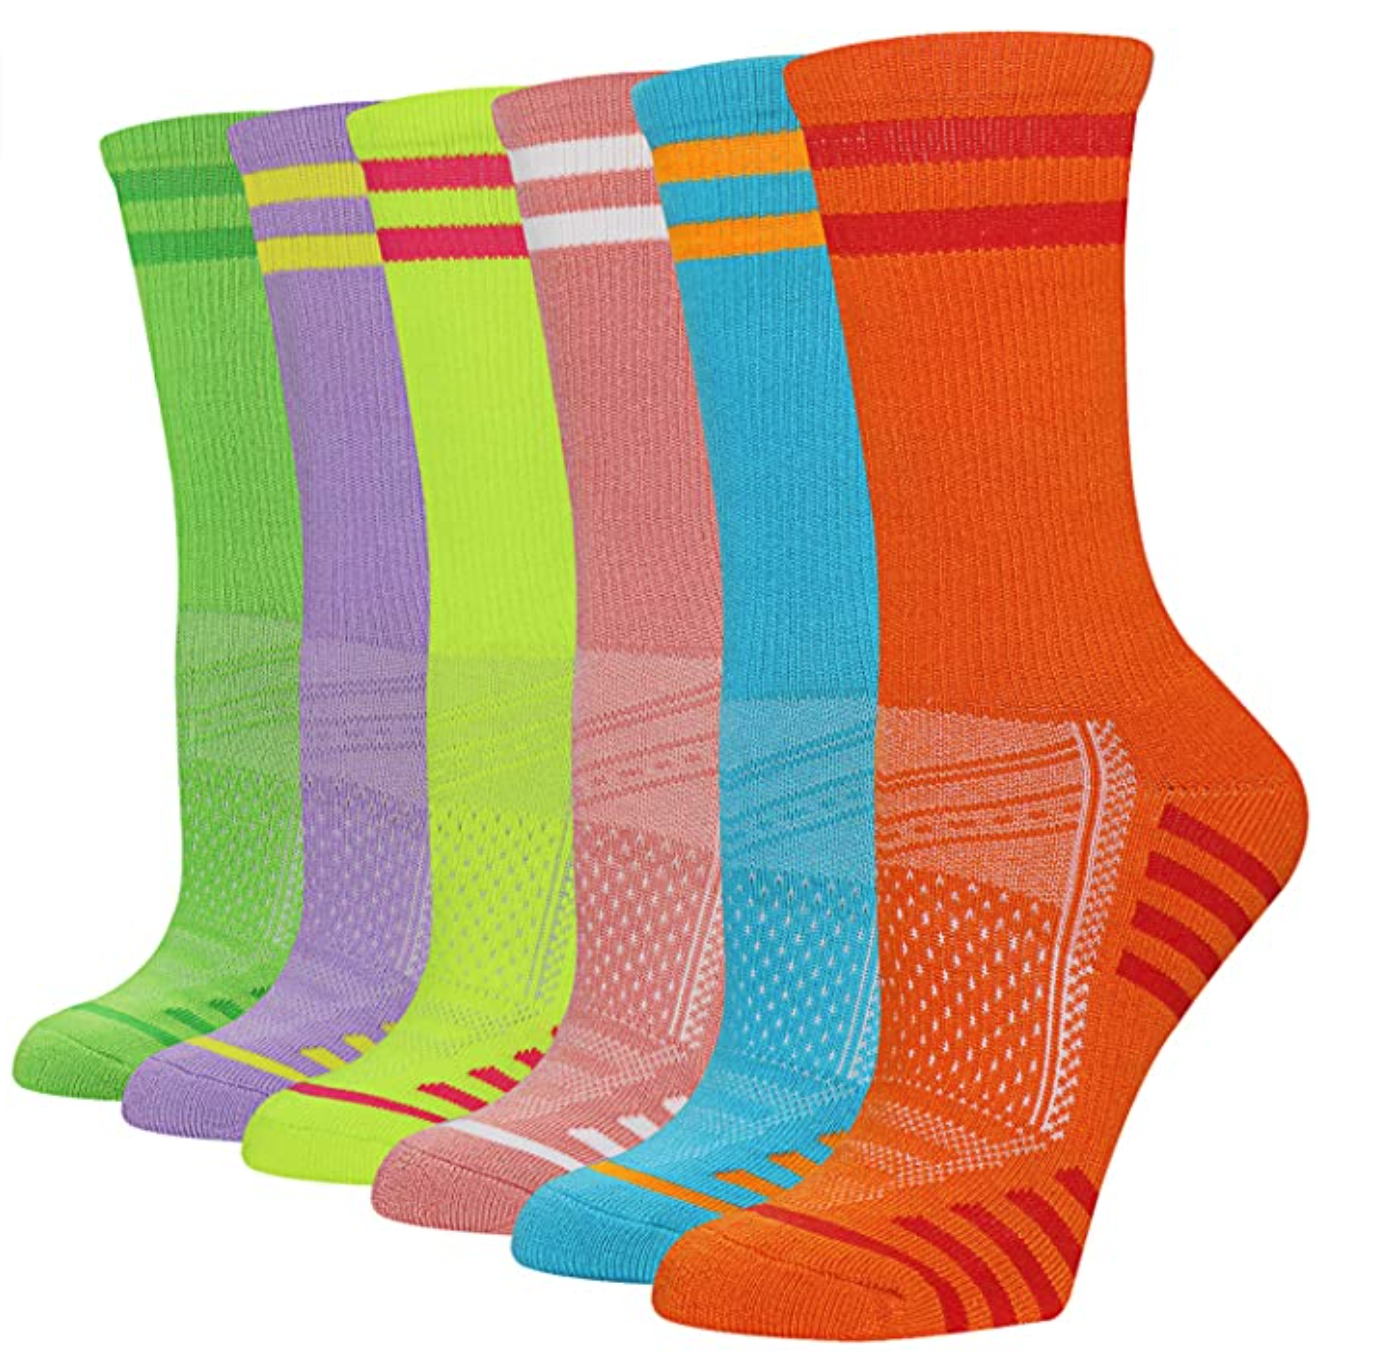 socks for runners, running, trail running, socks, fundency